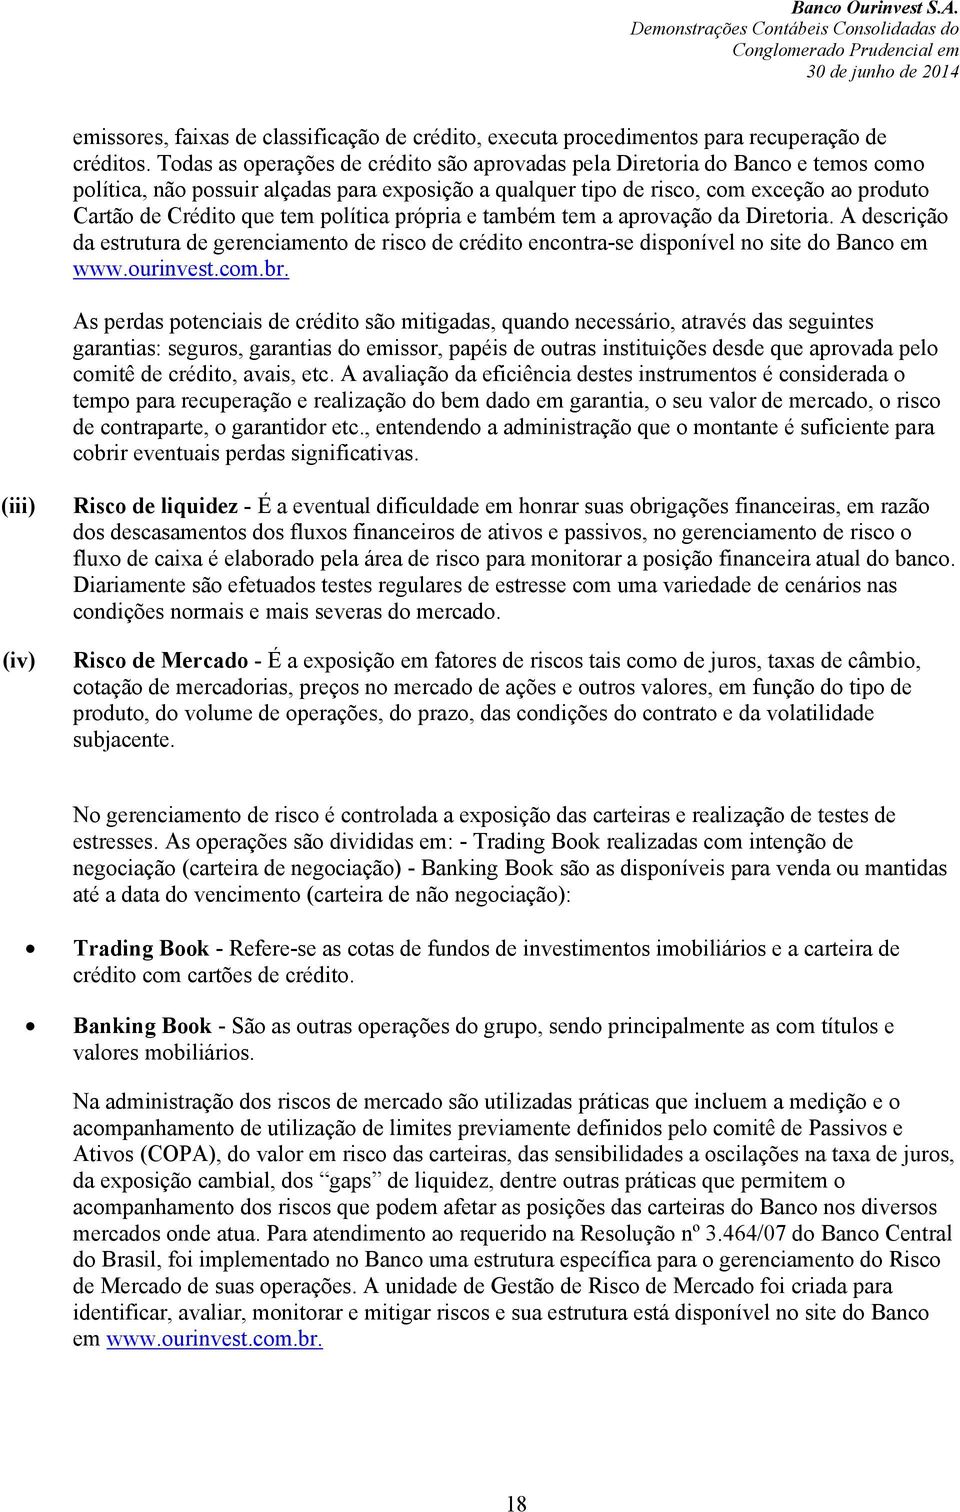 tem política própria e também tem a aprovação da Diretoria. A descrição da estrutura de gerenciamento de risco de crédito encontra-se disponível no site do Banco em www.ourinvest.com.br.